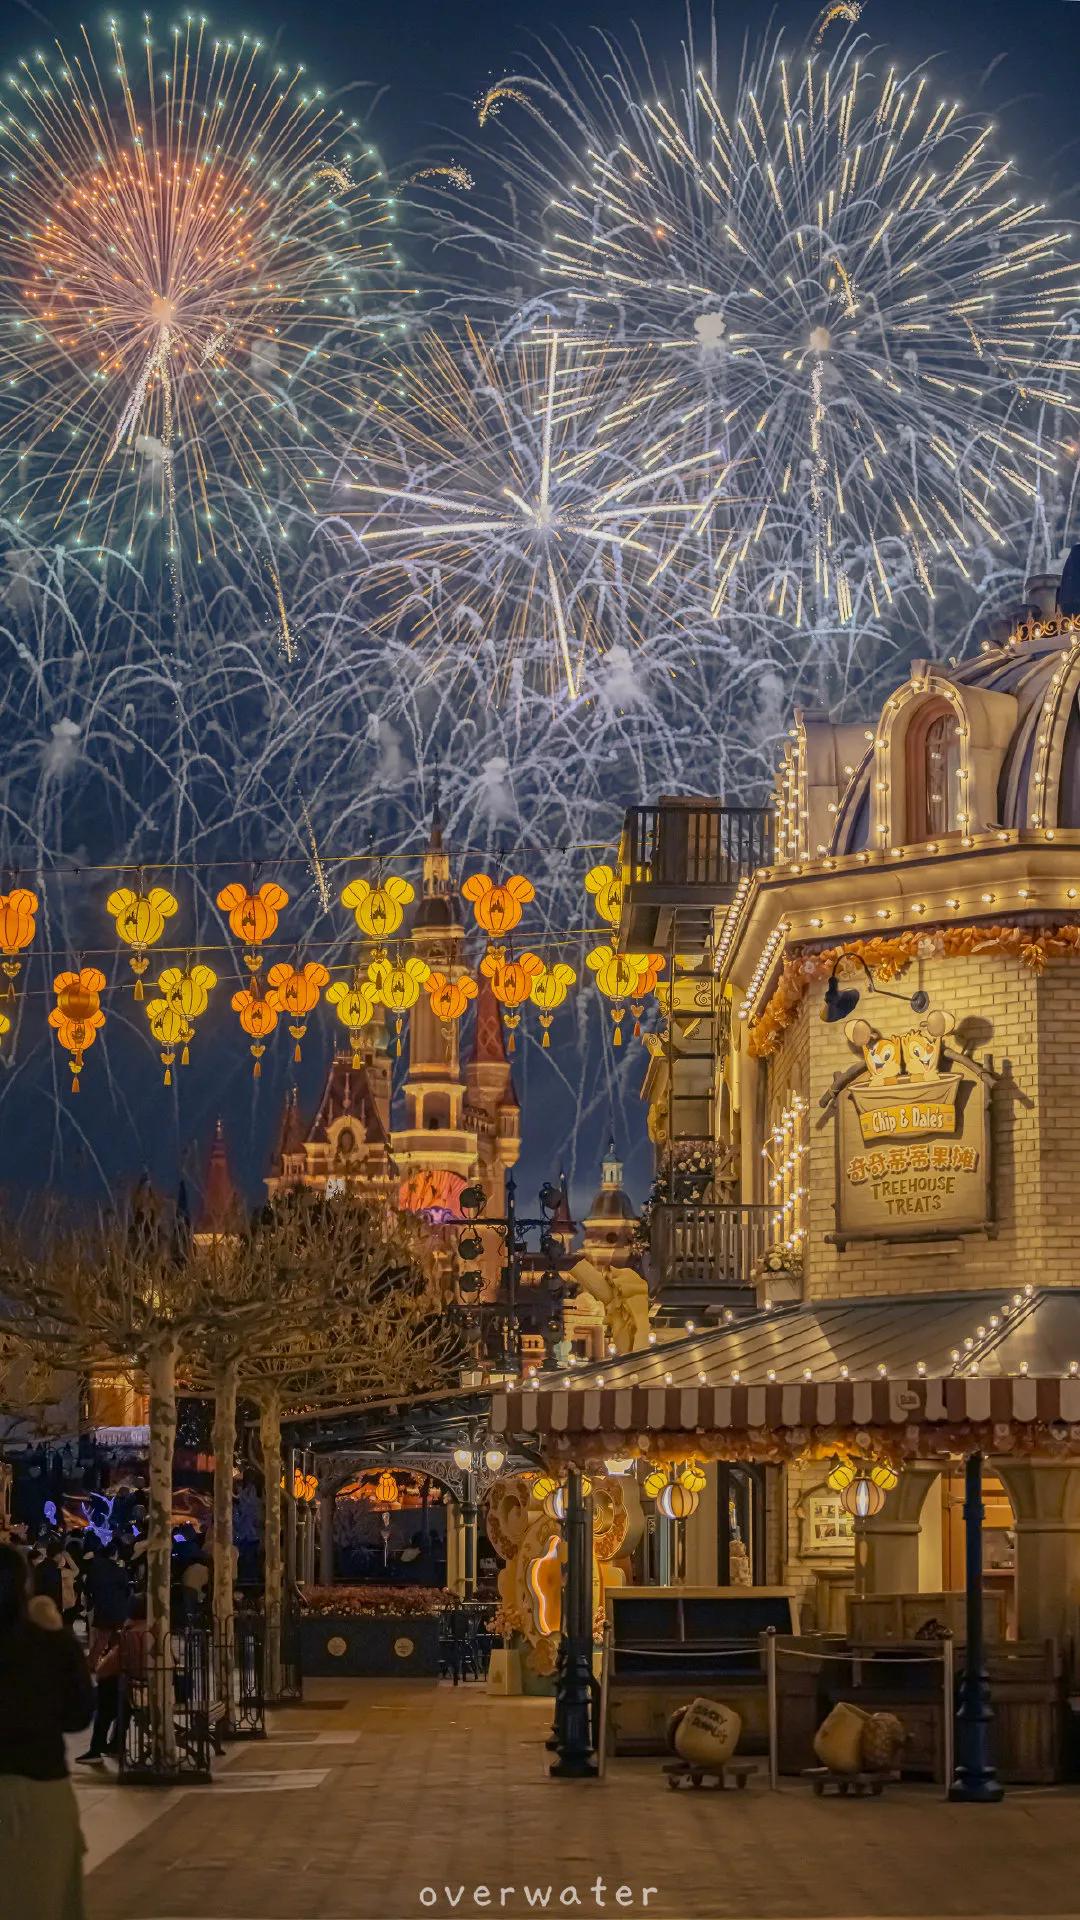 迪士尼 新年特别版花火来了噢 壁纸 背景 头像 资讯咖